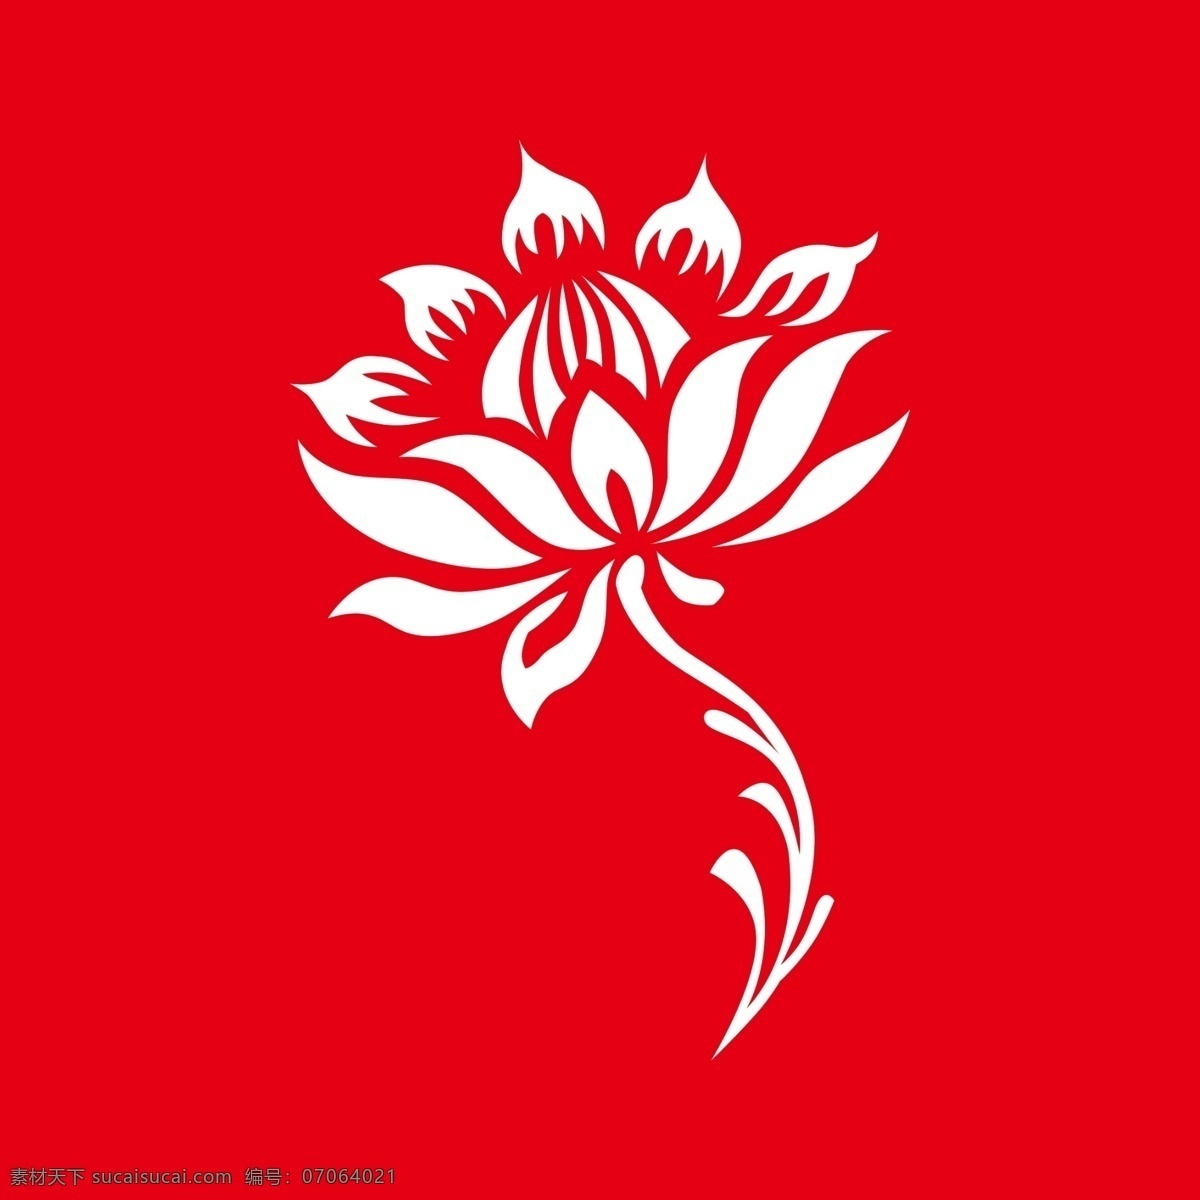 莲花 标志 logo 公司标志 企业标志 舞蹈标志 学校标志 高清图 分层